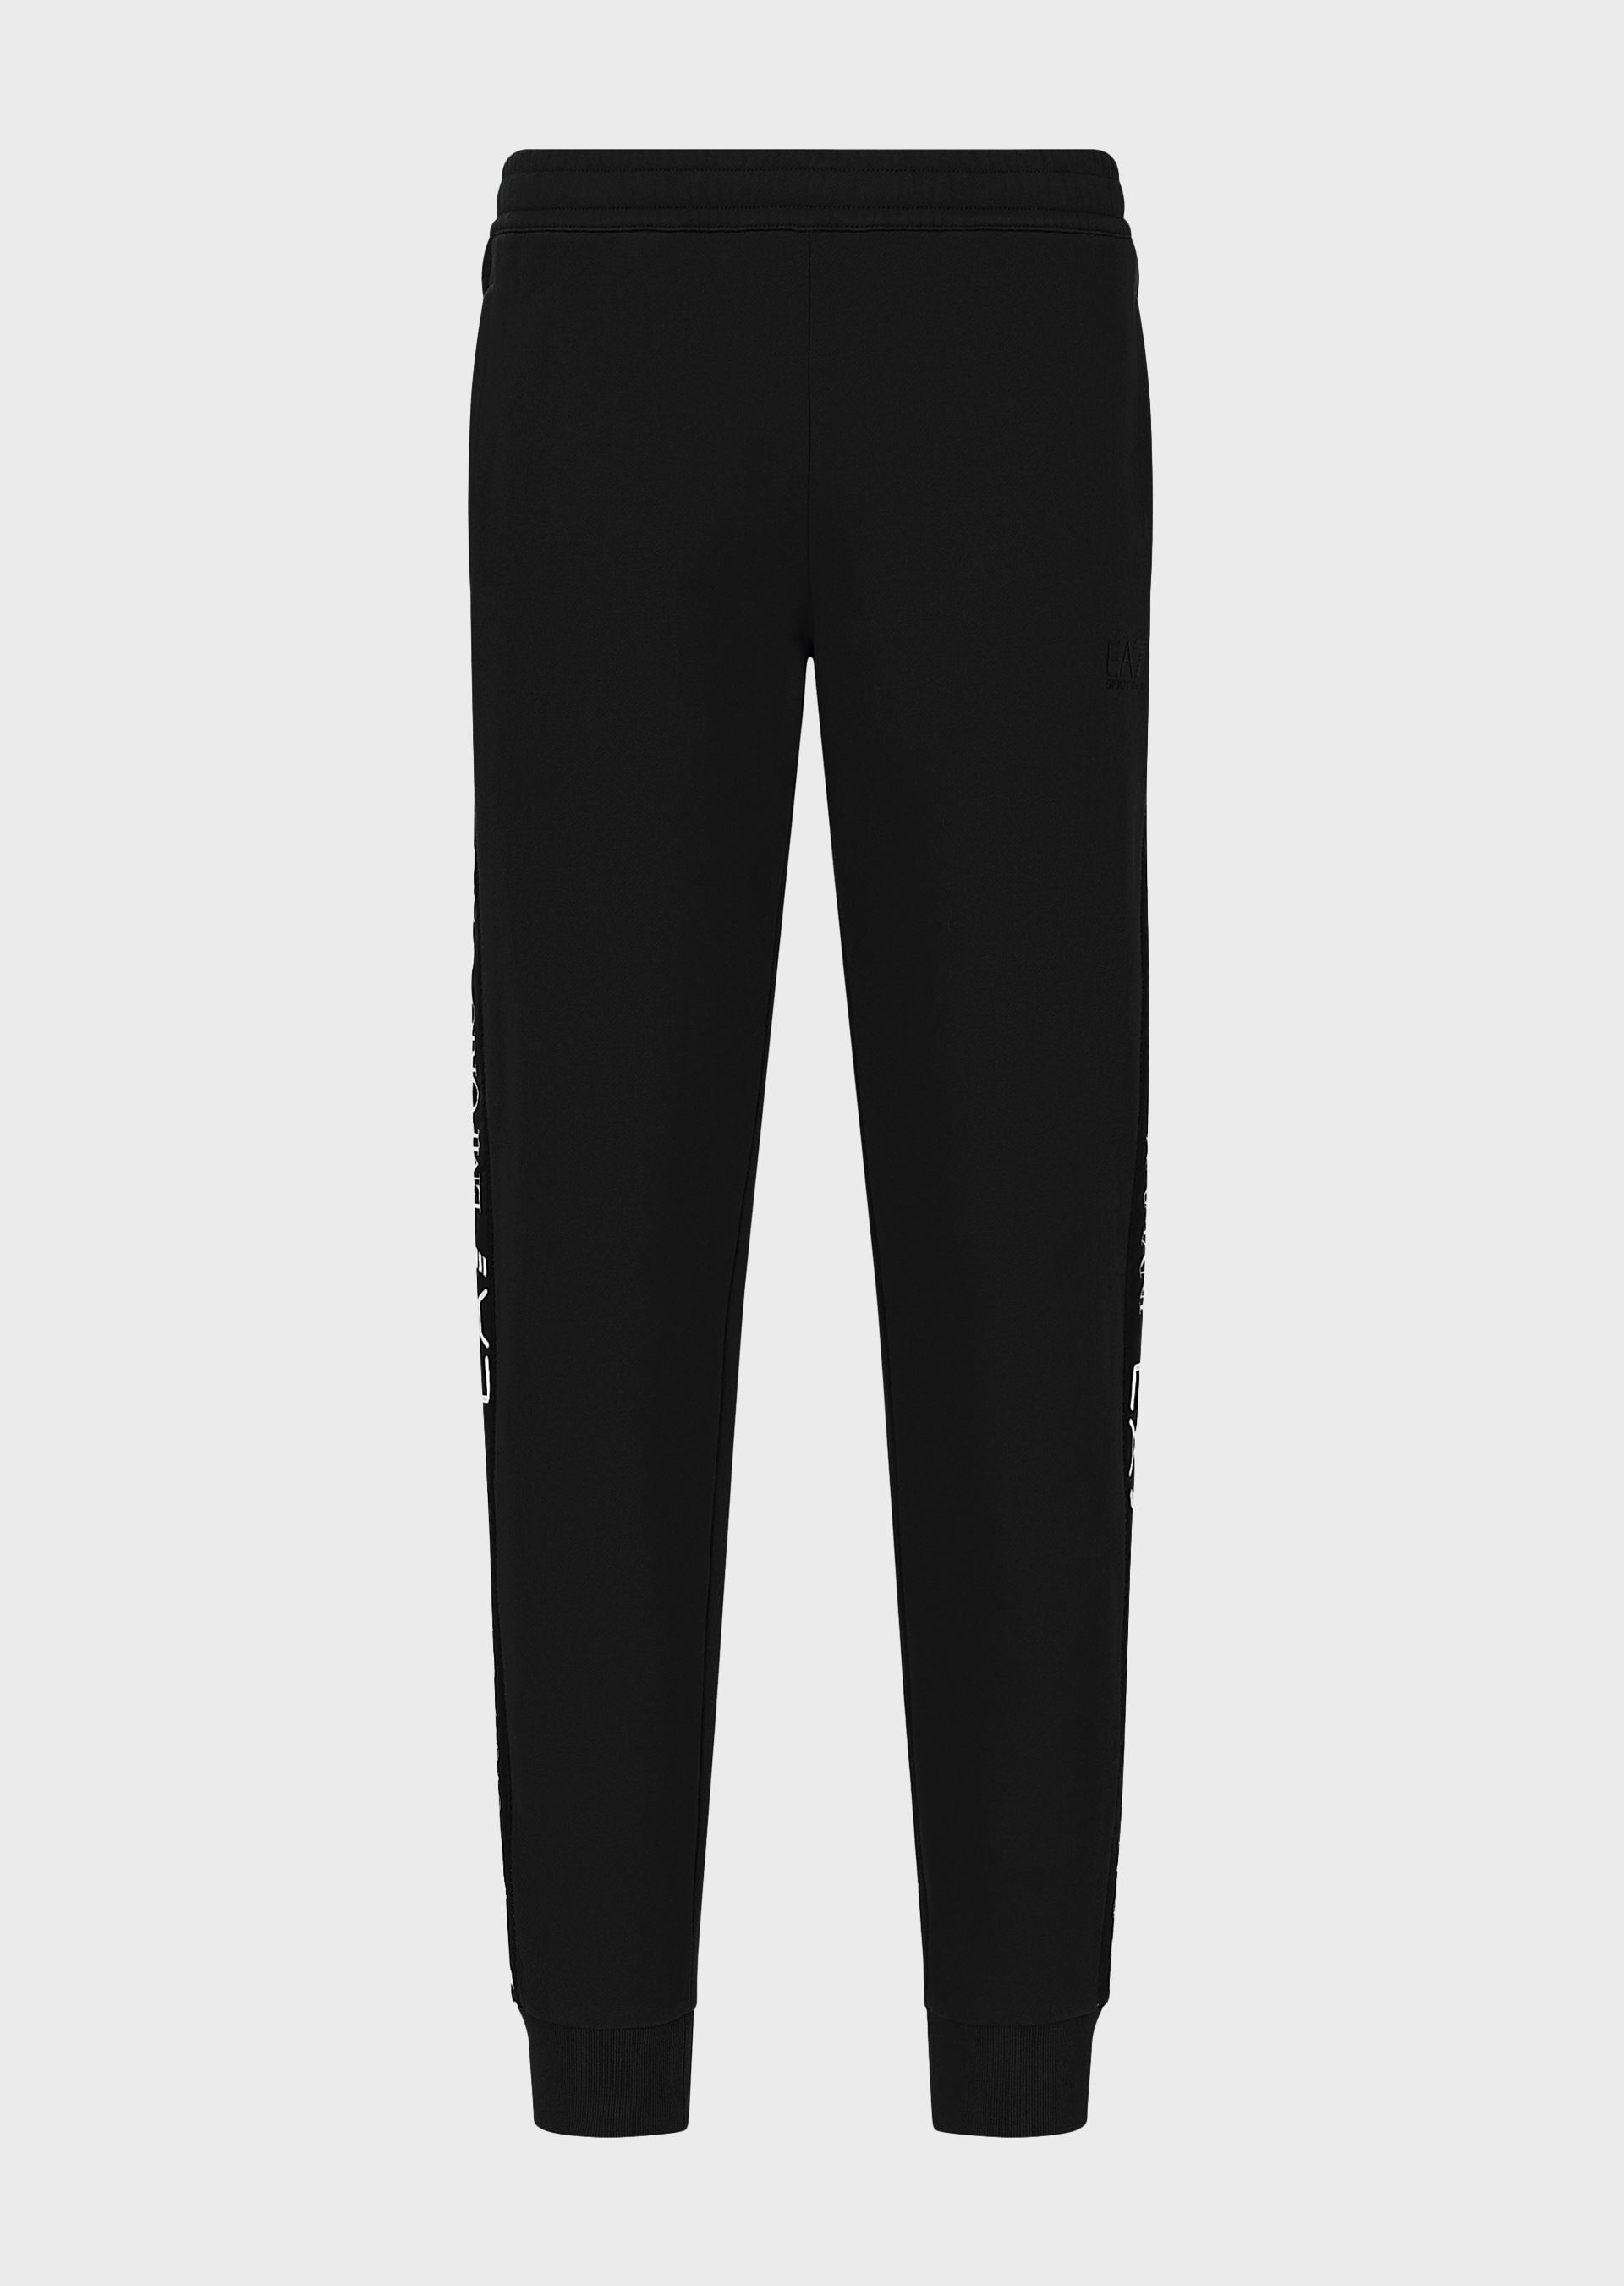 Emporio Armani Sweatpants - Item 13512987 In Black